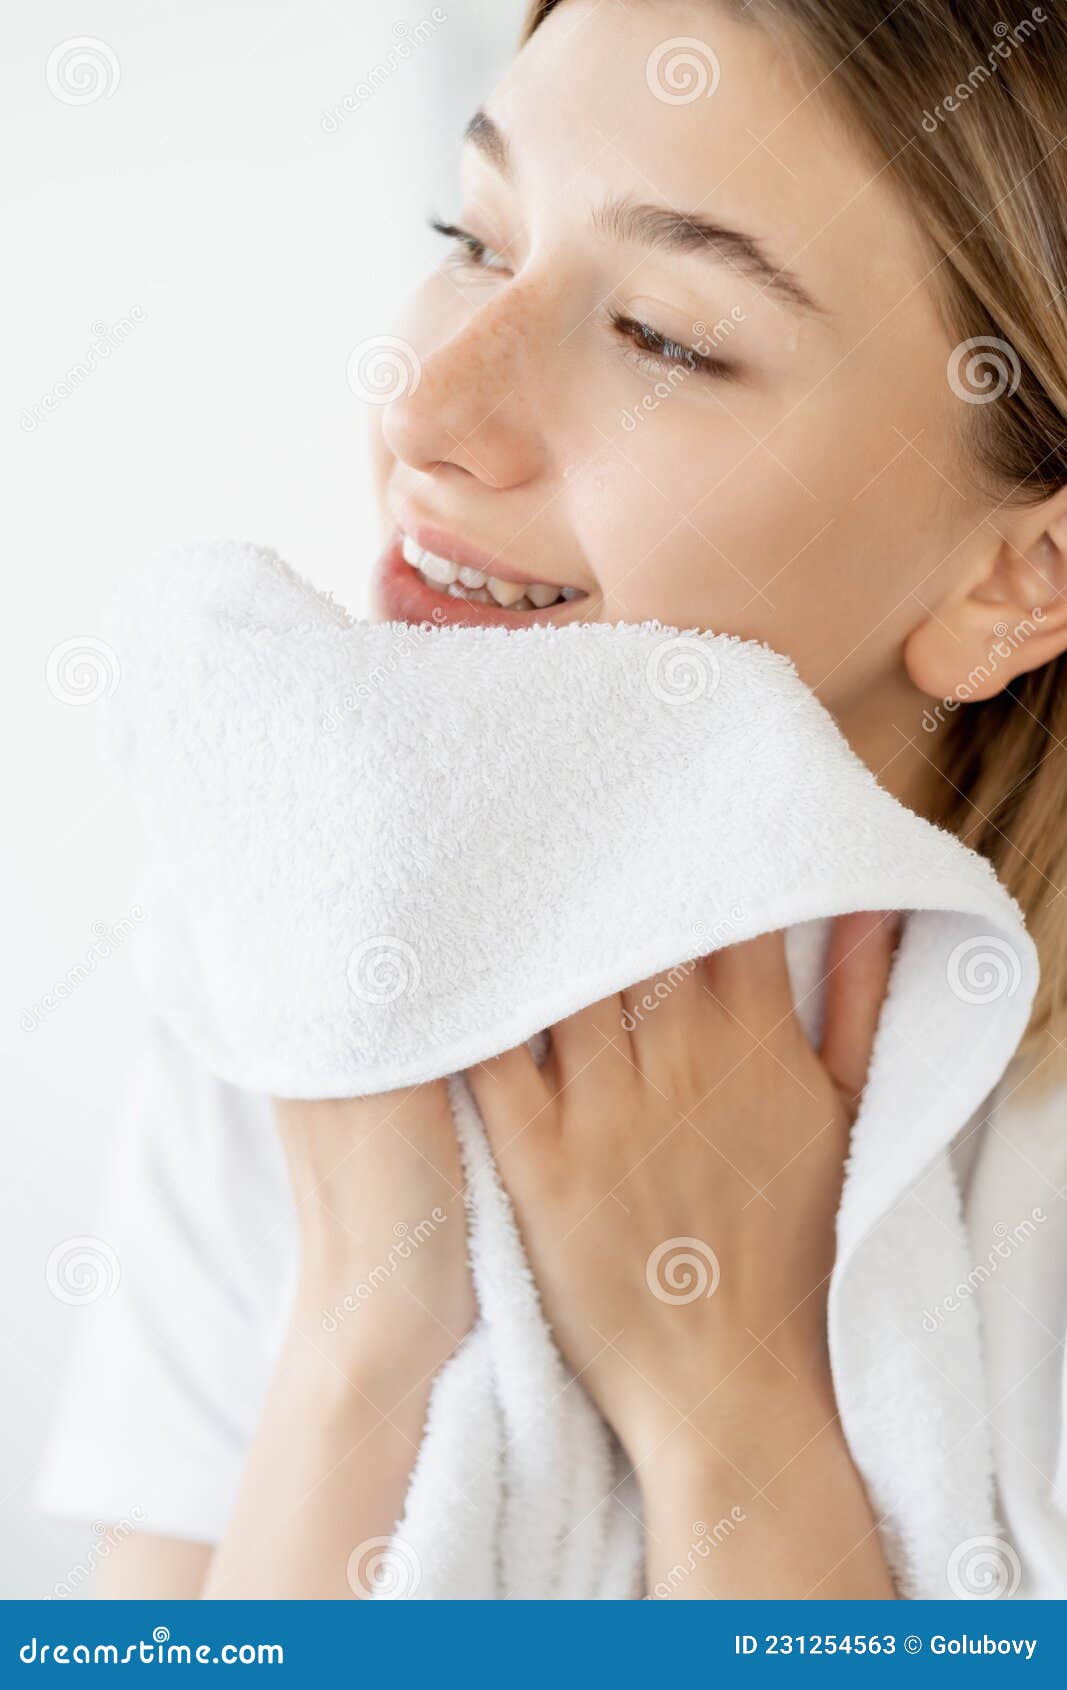 Toalla De Mujer Para Limpieza De Higiene En La Mañana De Lavado De Cara  Imagen de archivo - Imagen de modelo, facial: 231254563